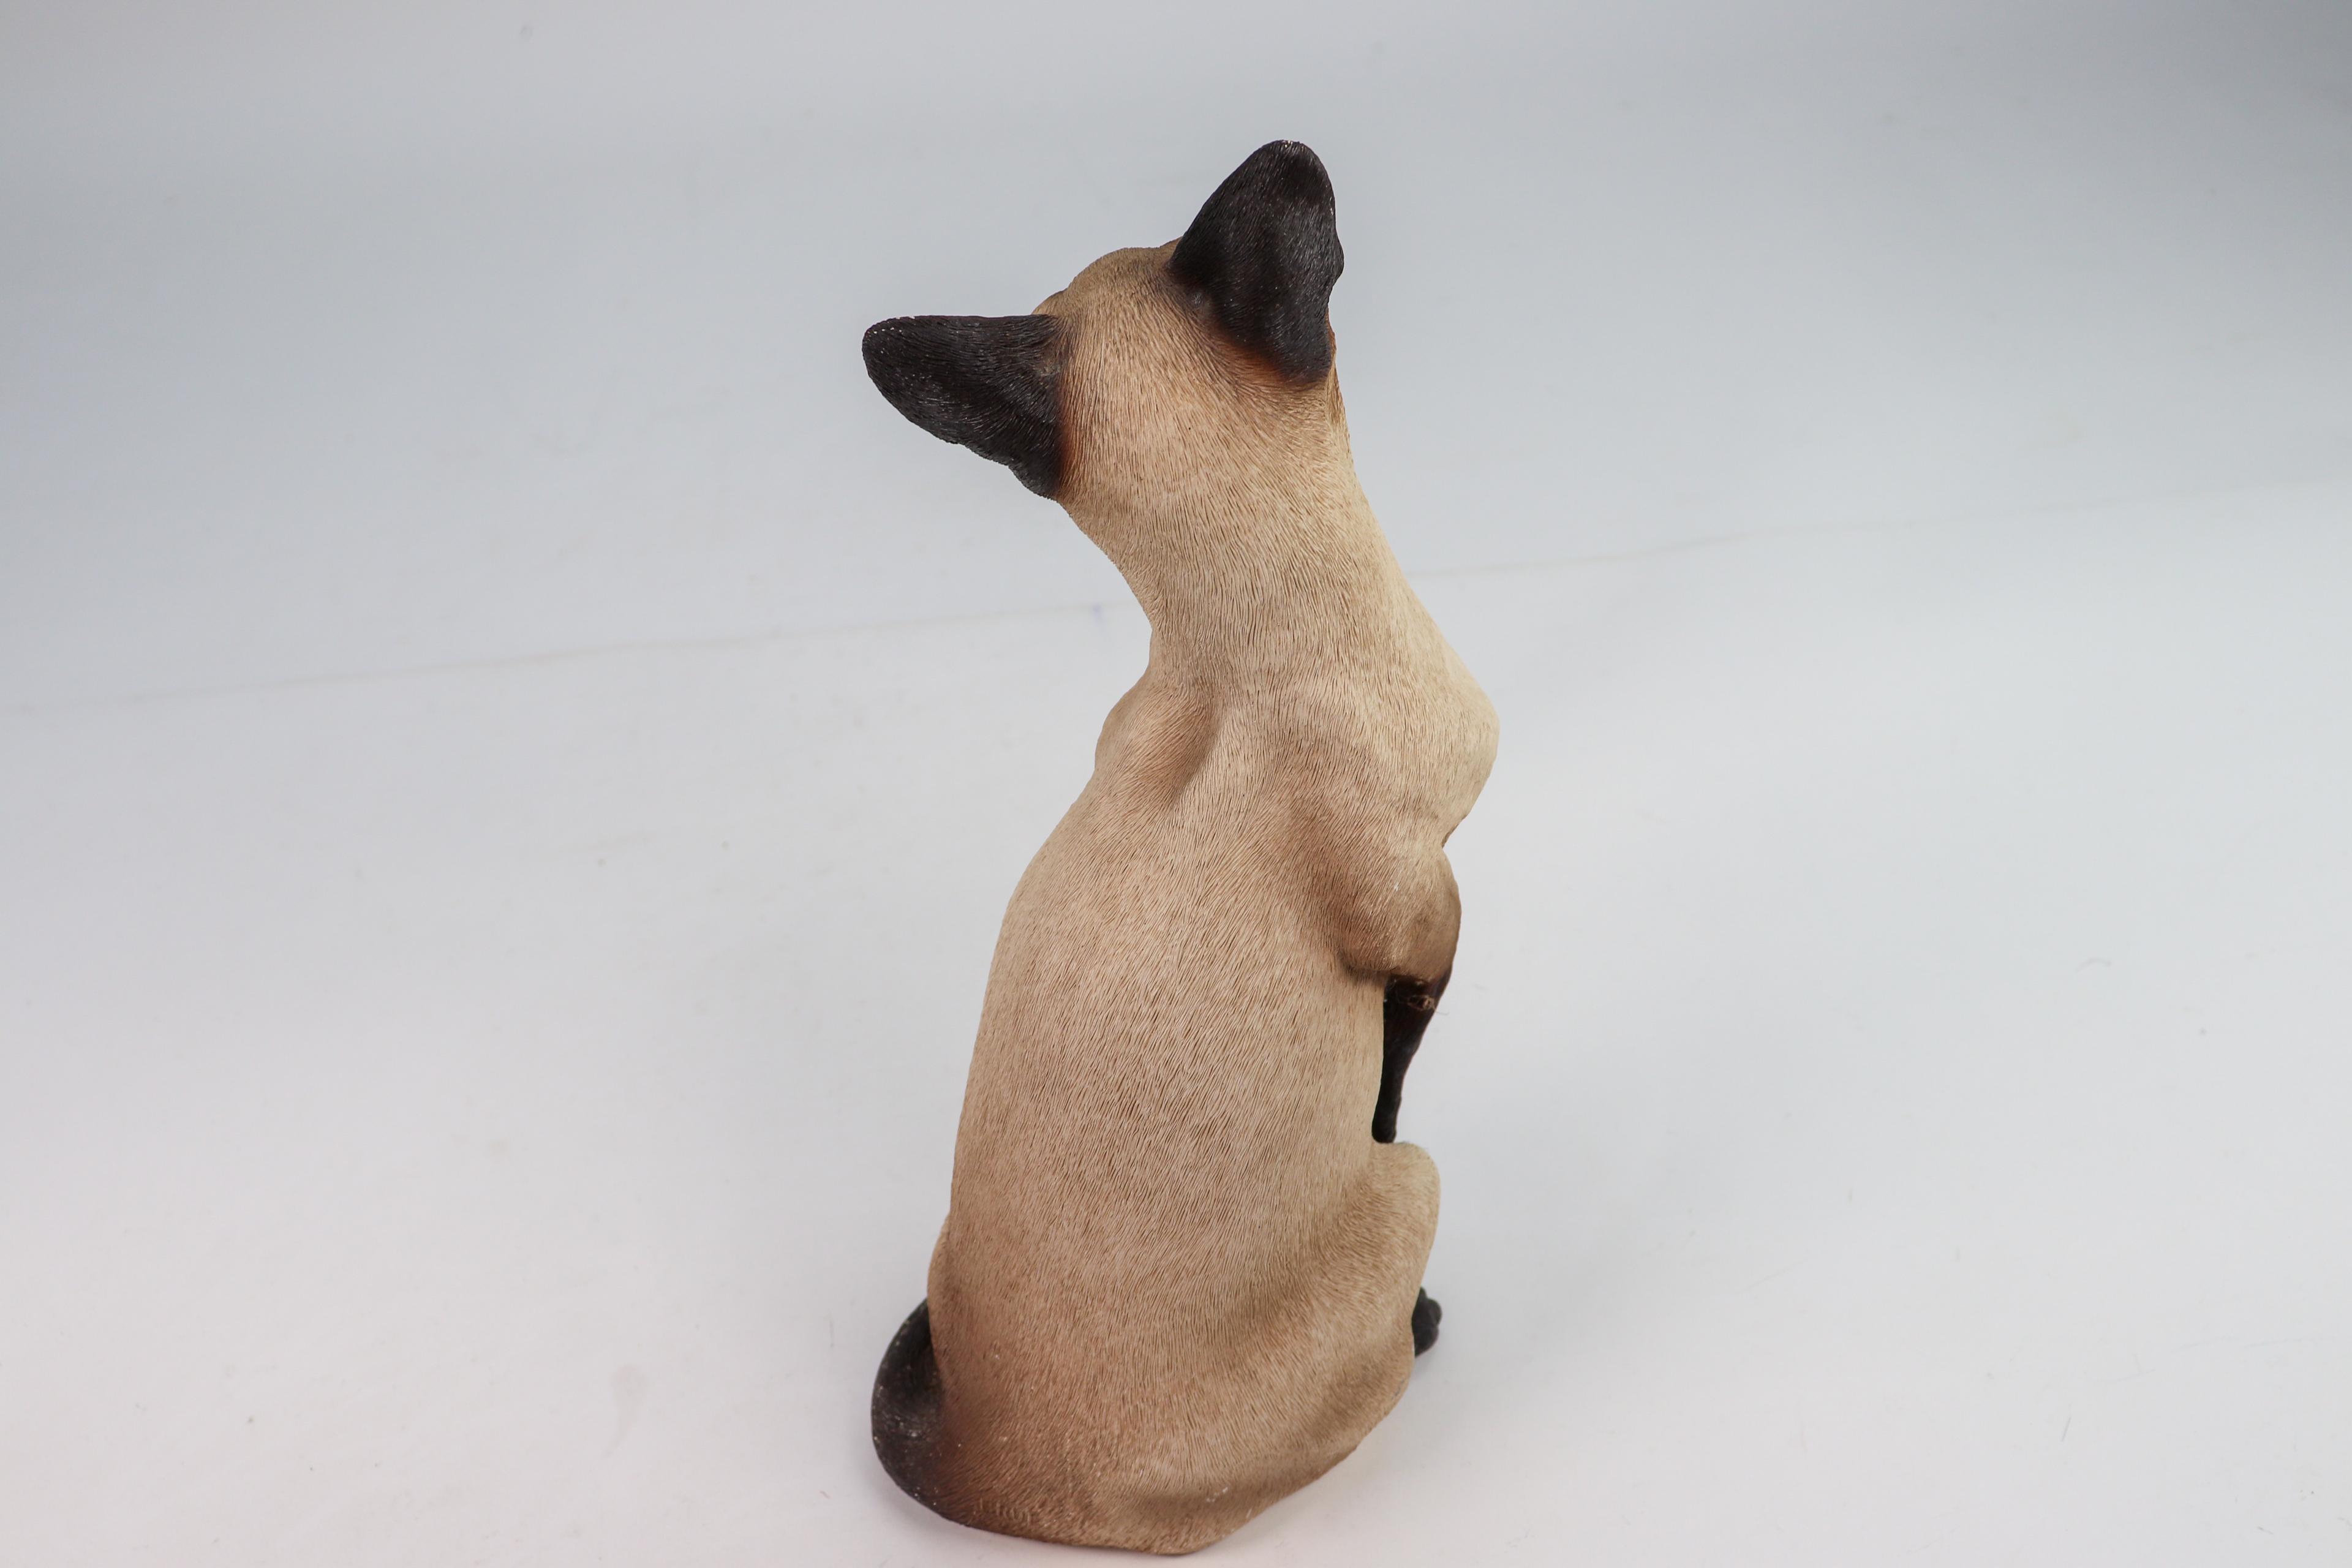 Siamese Cat Sculptures